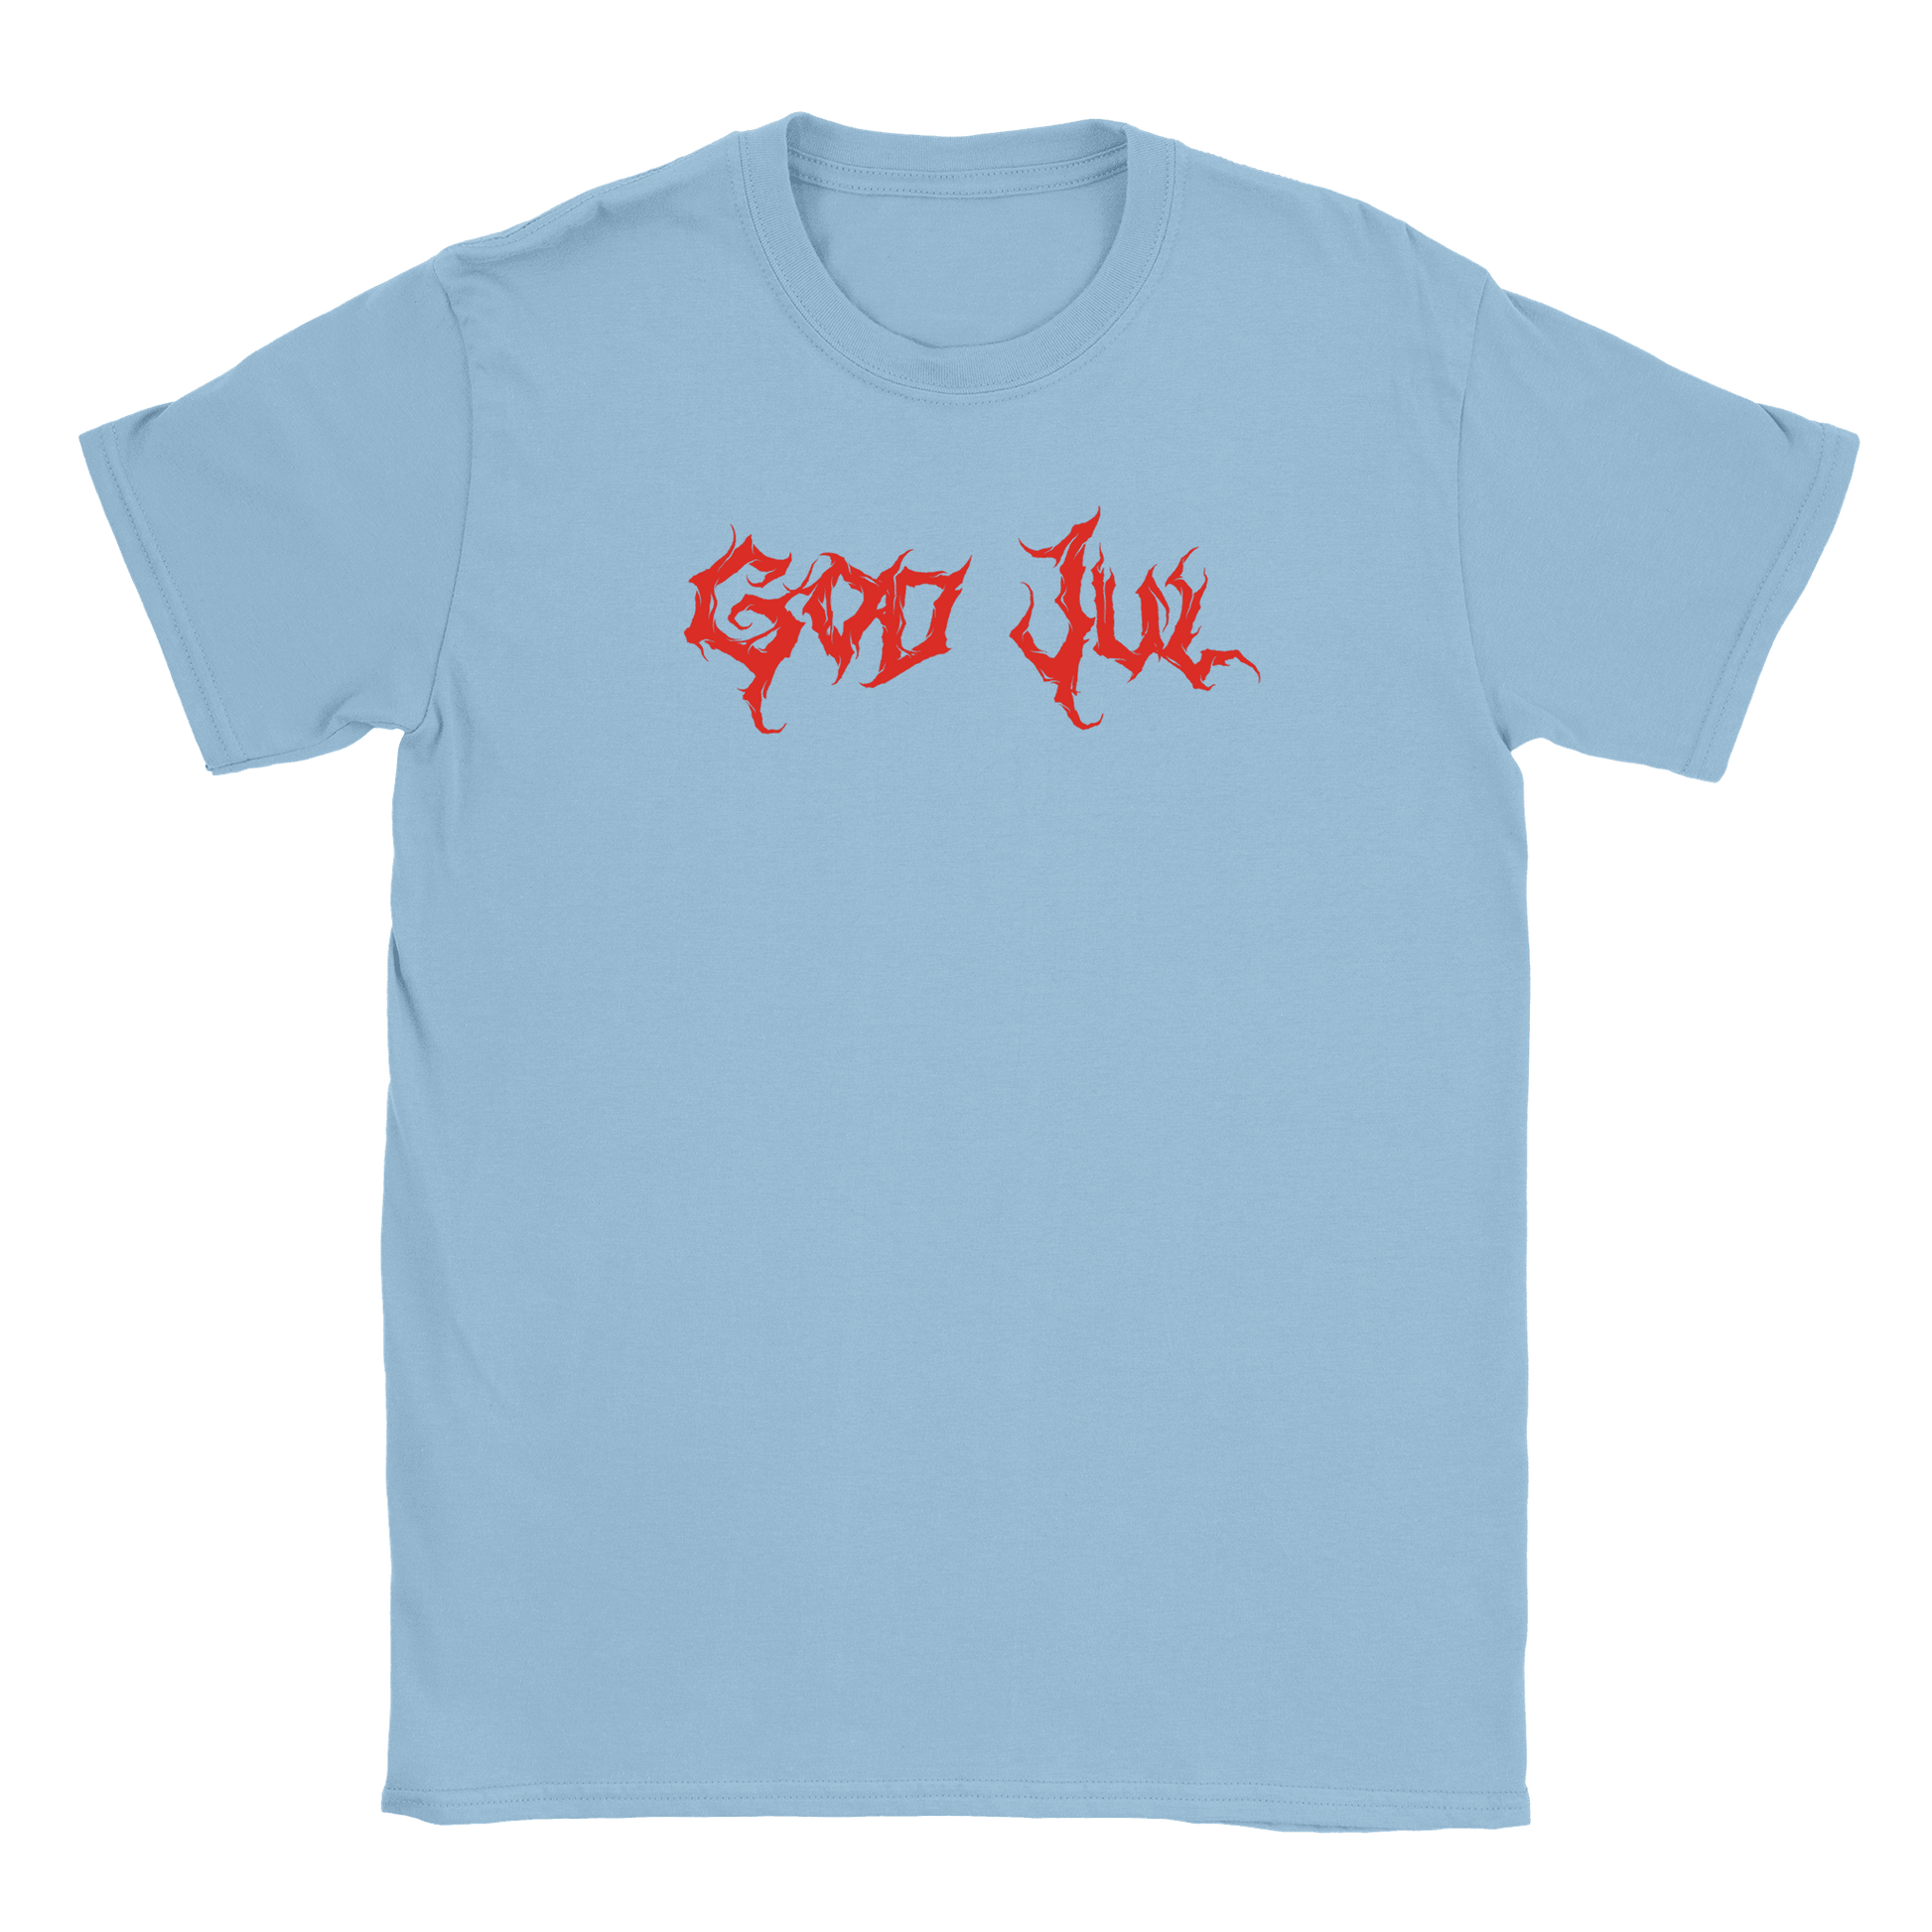 God Jul - T-shirt Ljusblå